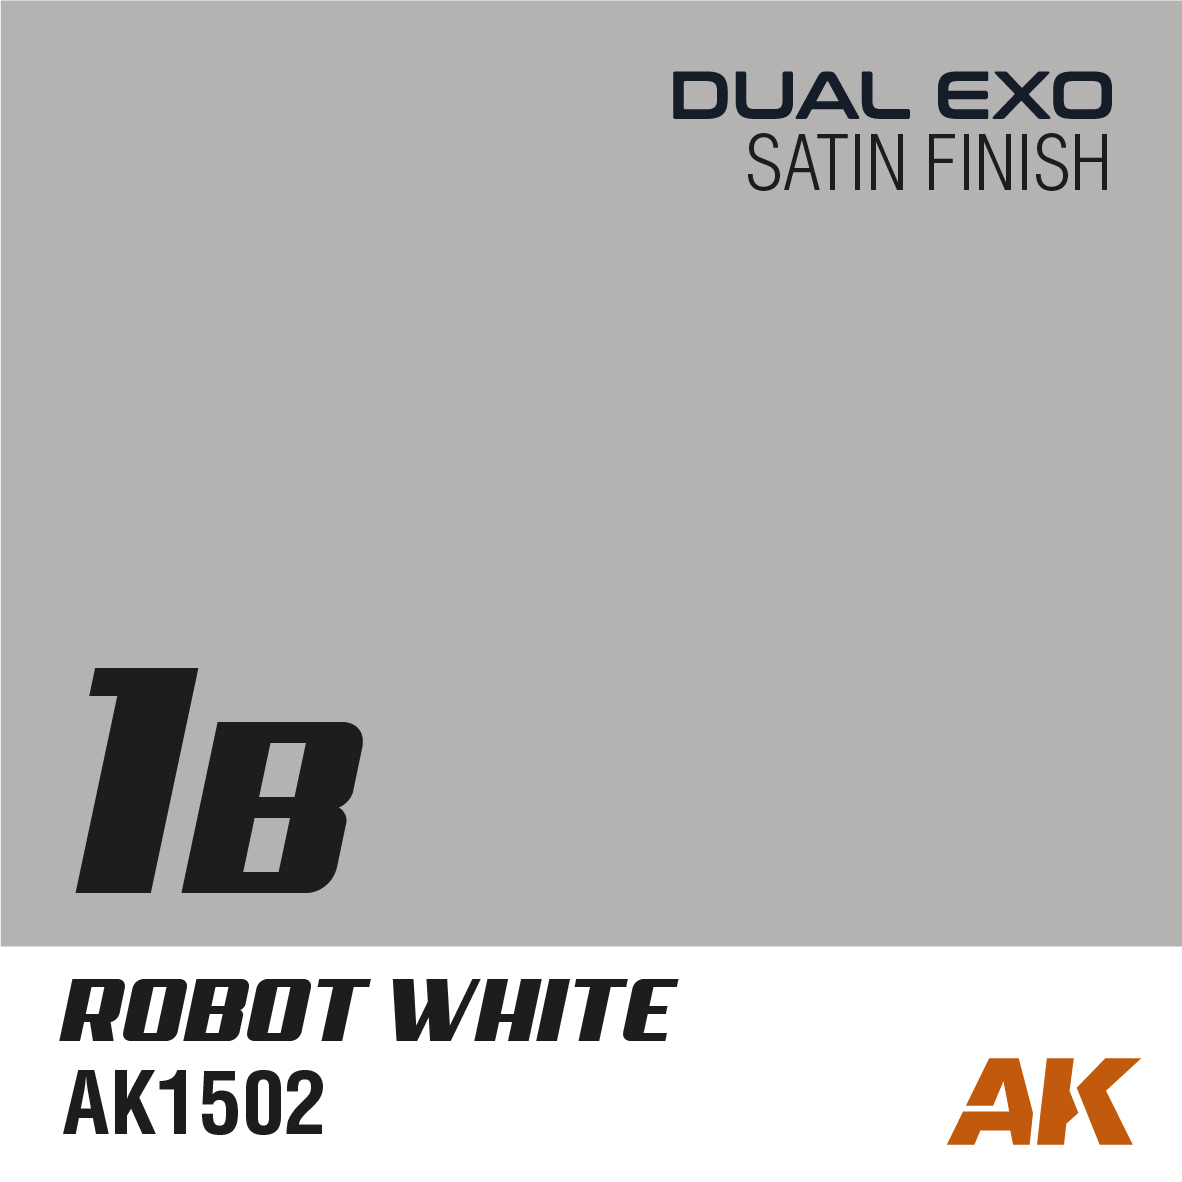 Dual Exo 1B - Robot White